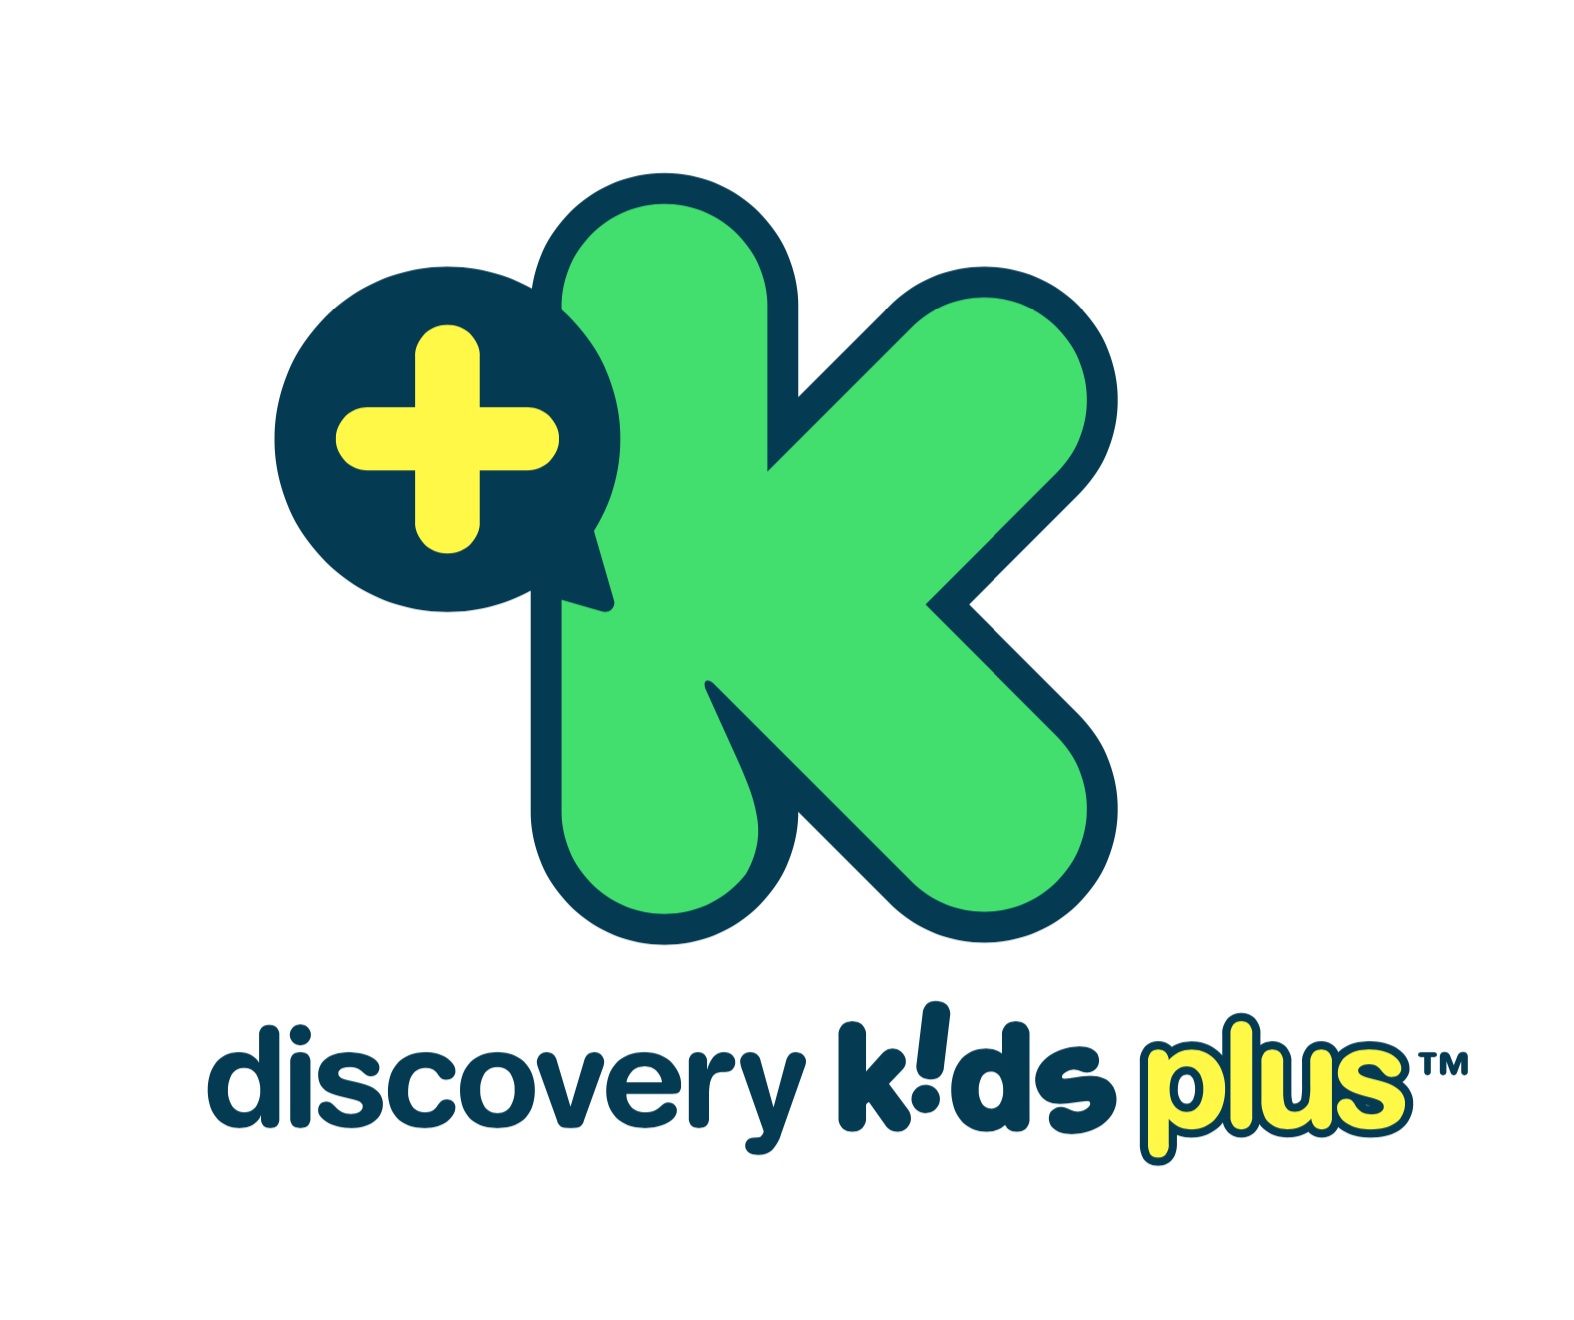 Discovery Kids Plus libera conteúdo para crianças e adultos aproveitaram durante o tempo dentro de casa